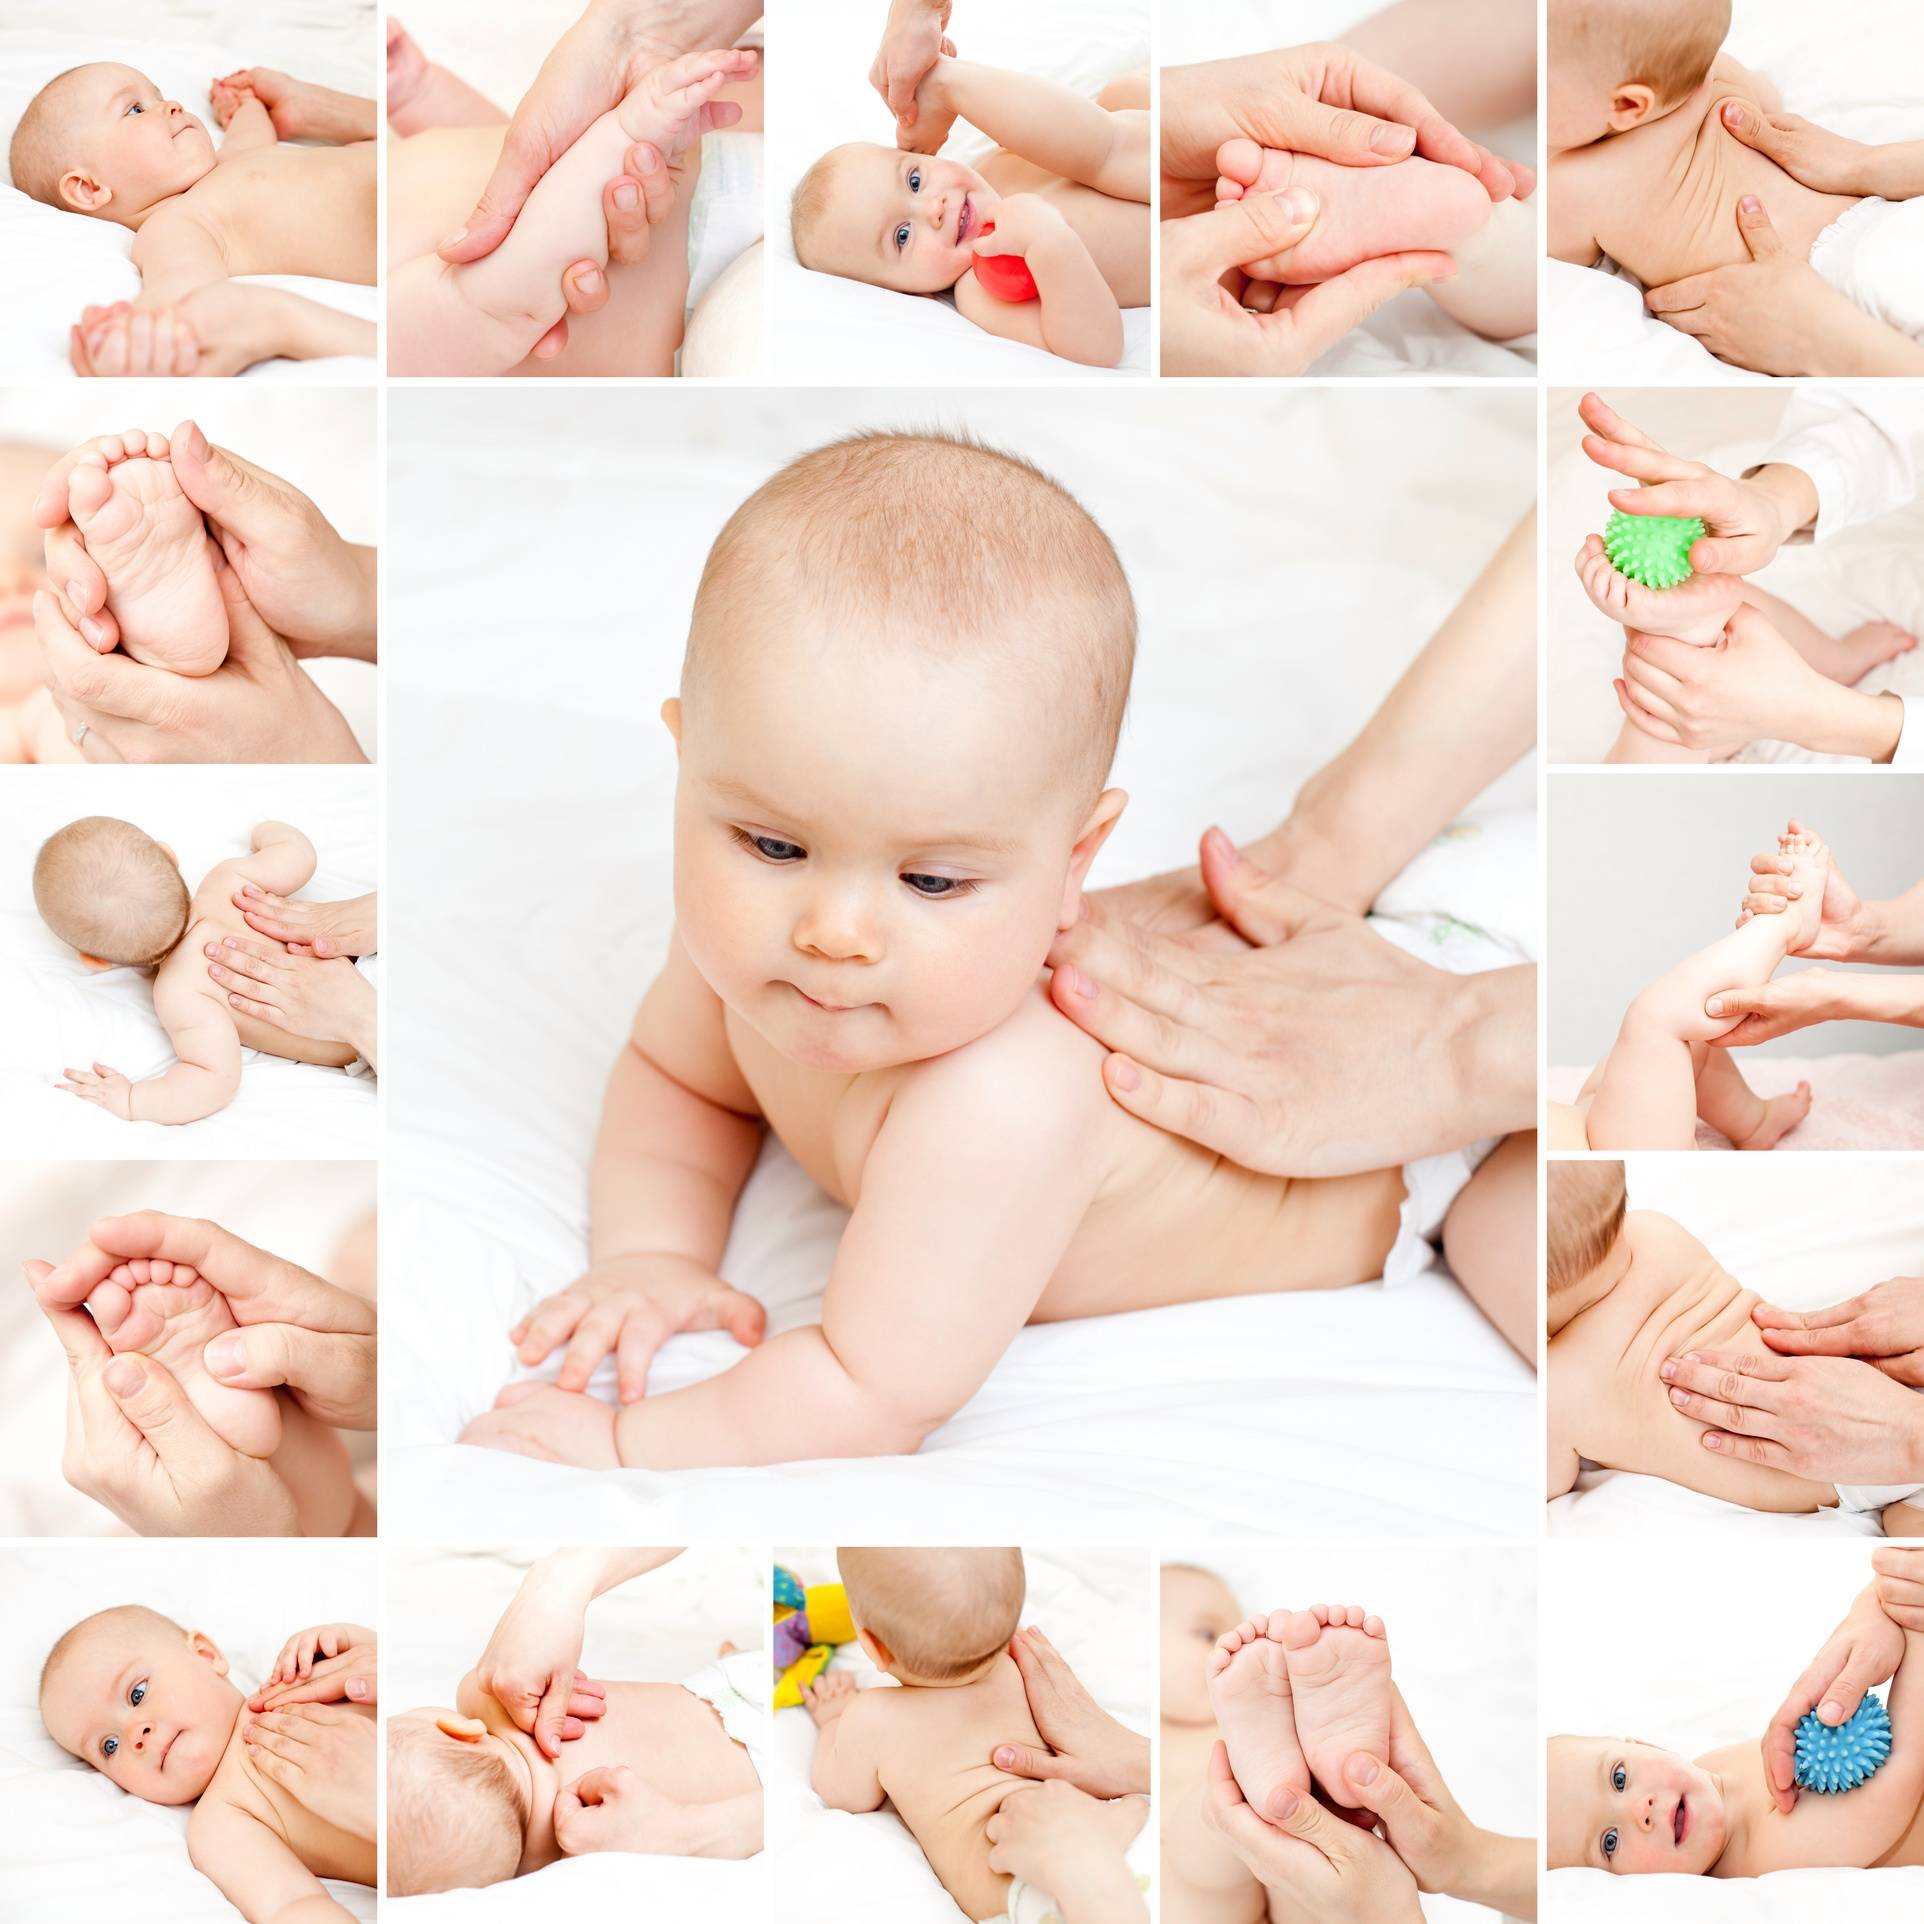 Укрепляющий массаж для детей - как делать новорожденному ребенку?